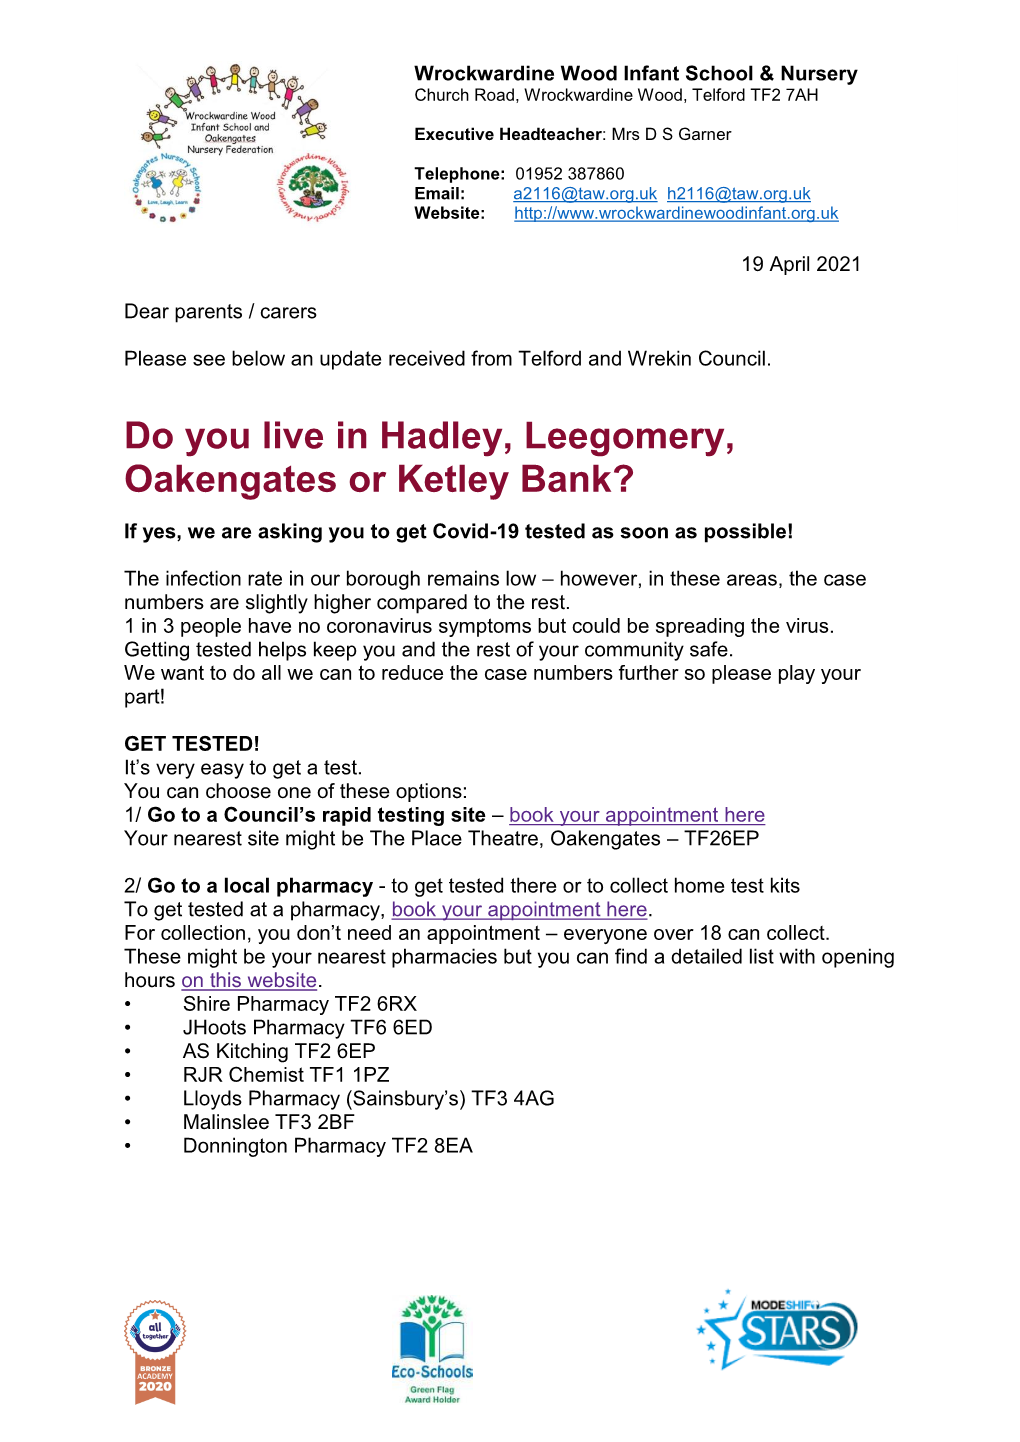 Do You Live in Hadley, Leegomery, Oakengates Or Ketley Bank?